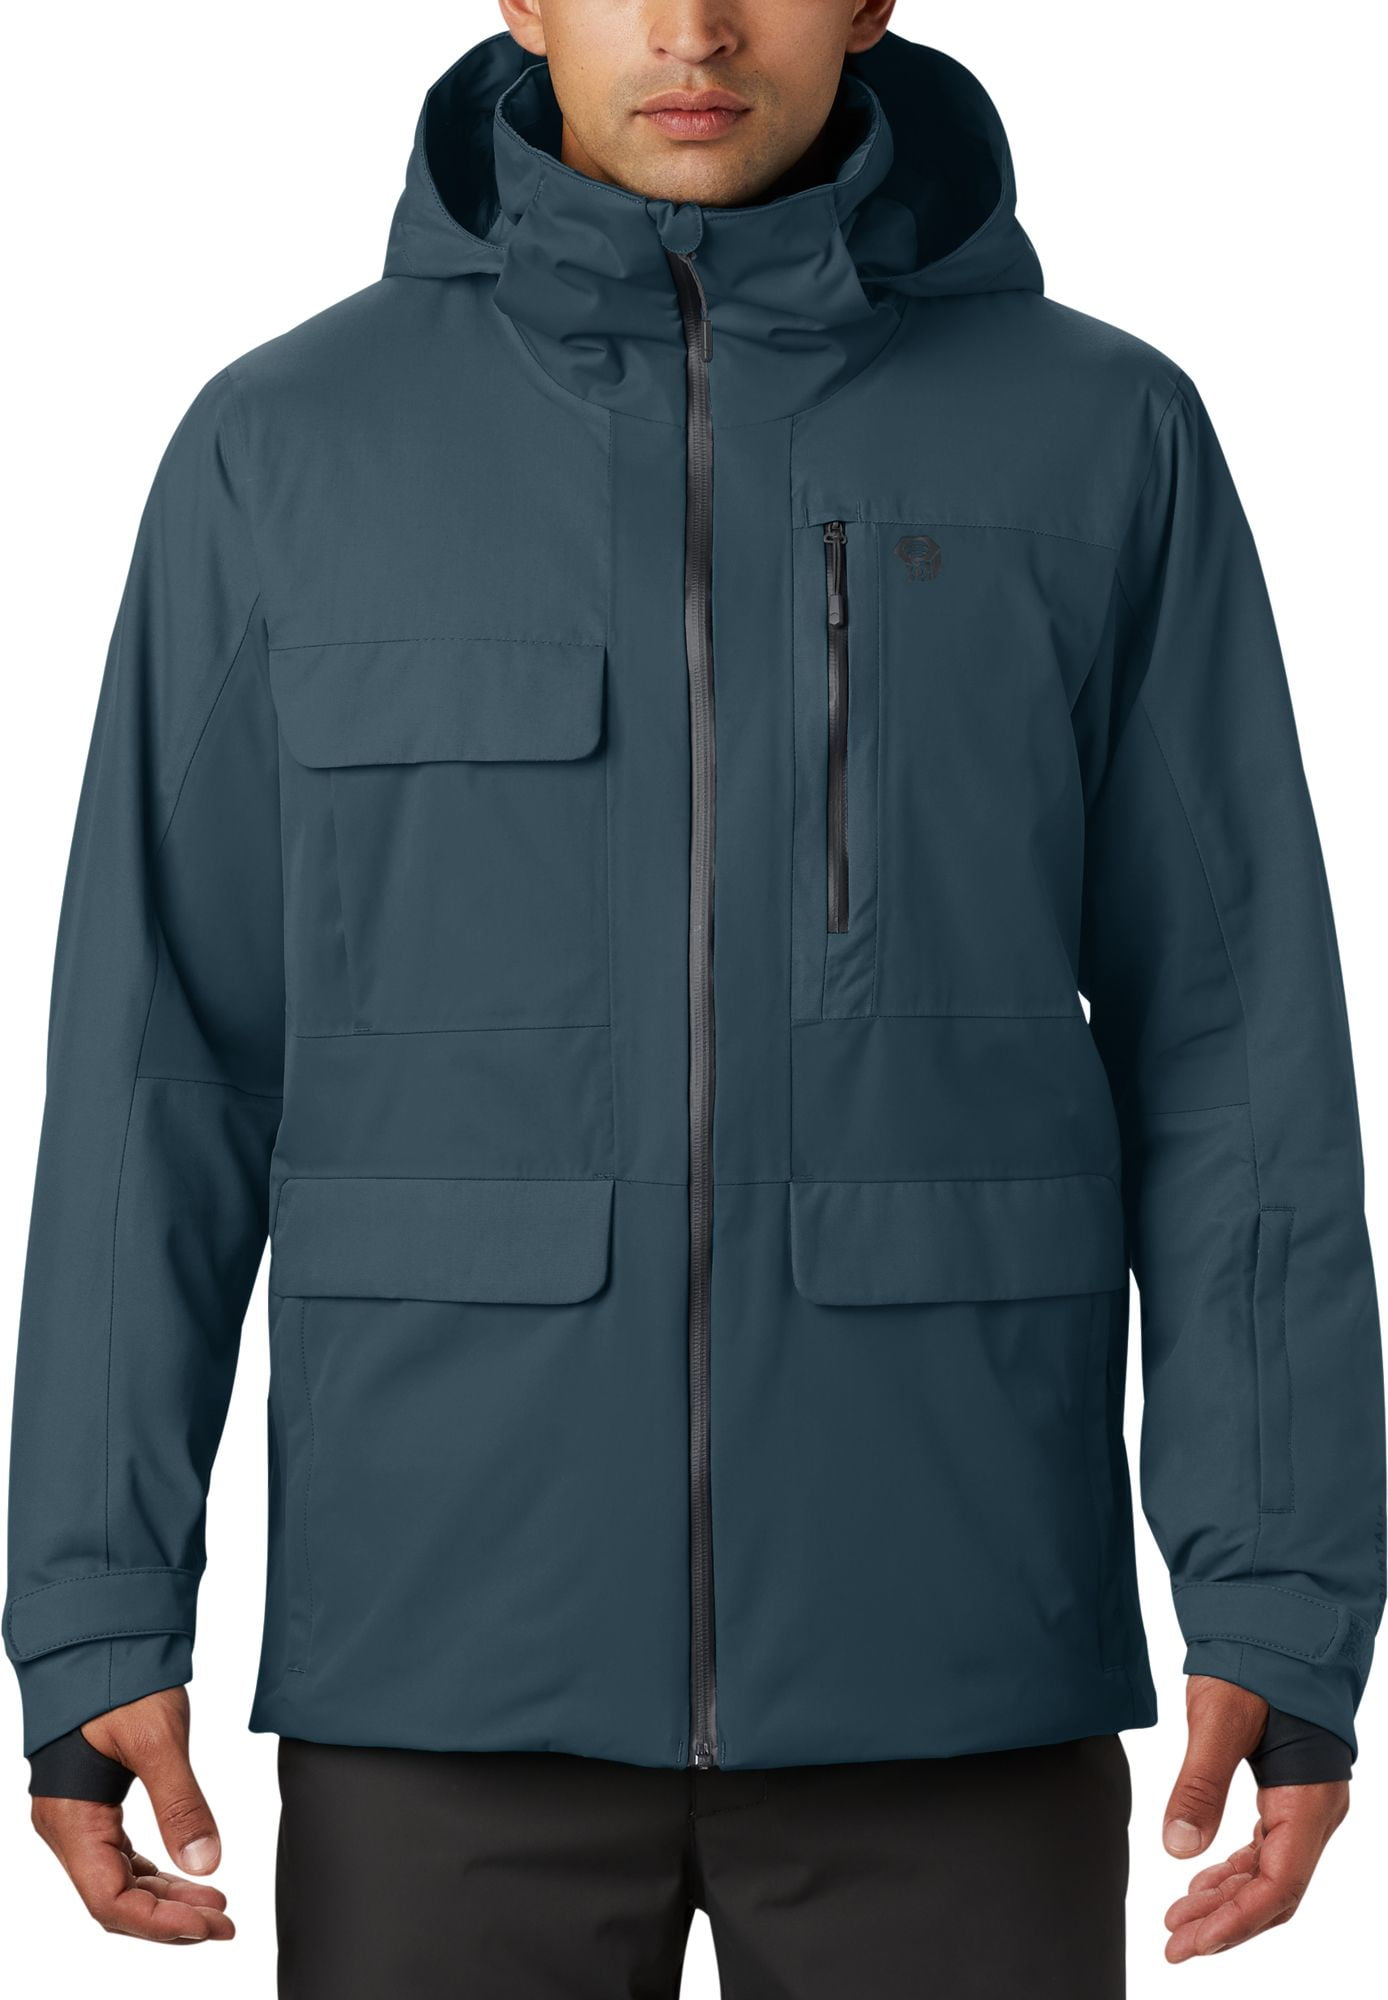 Mountain Hardwear Men's Firefall/2 Insulated Jacket - Walmart.com ...